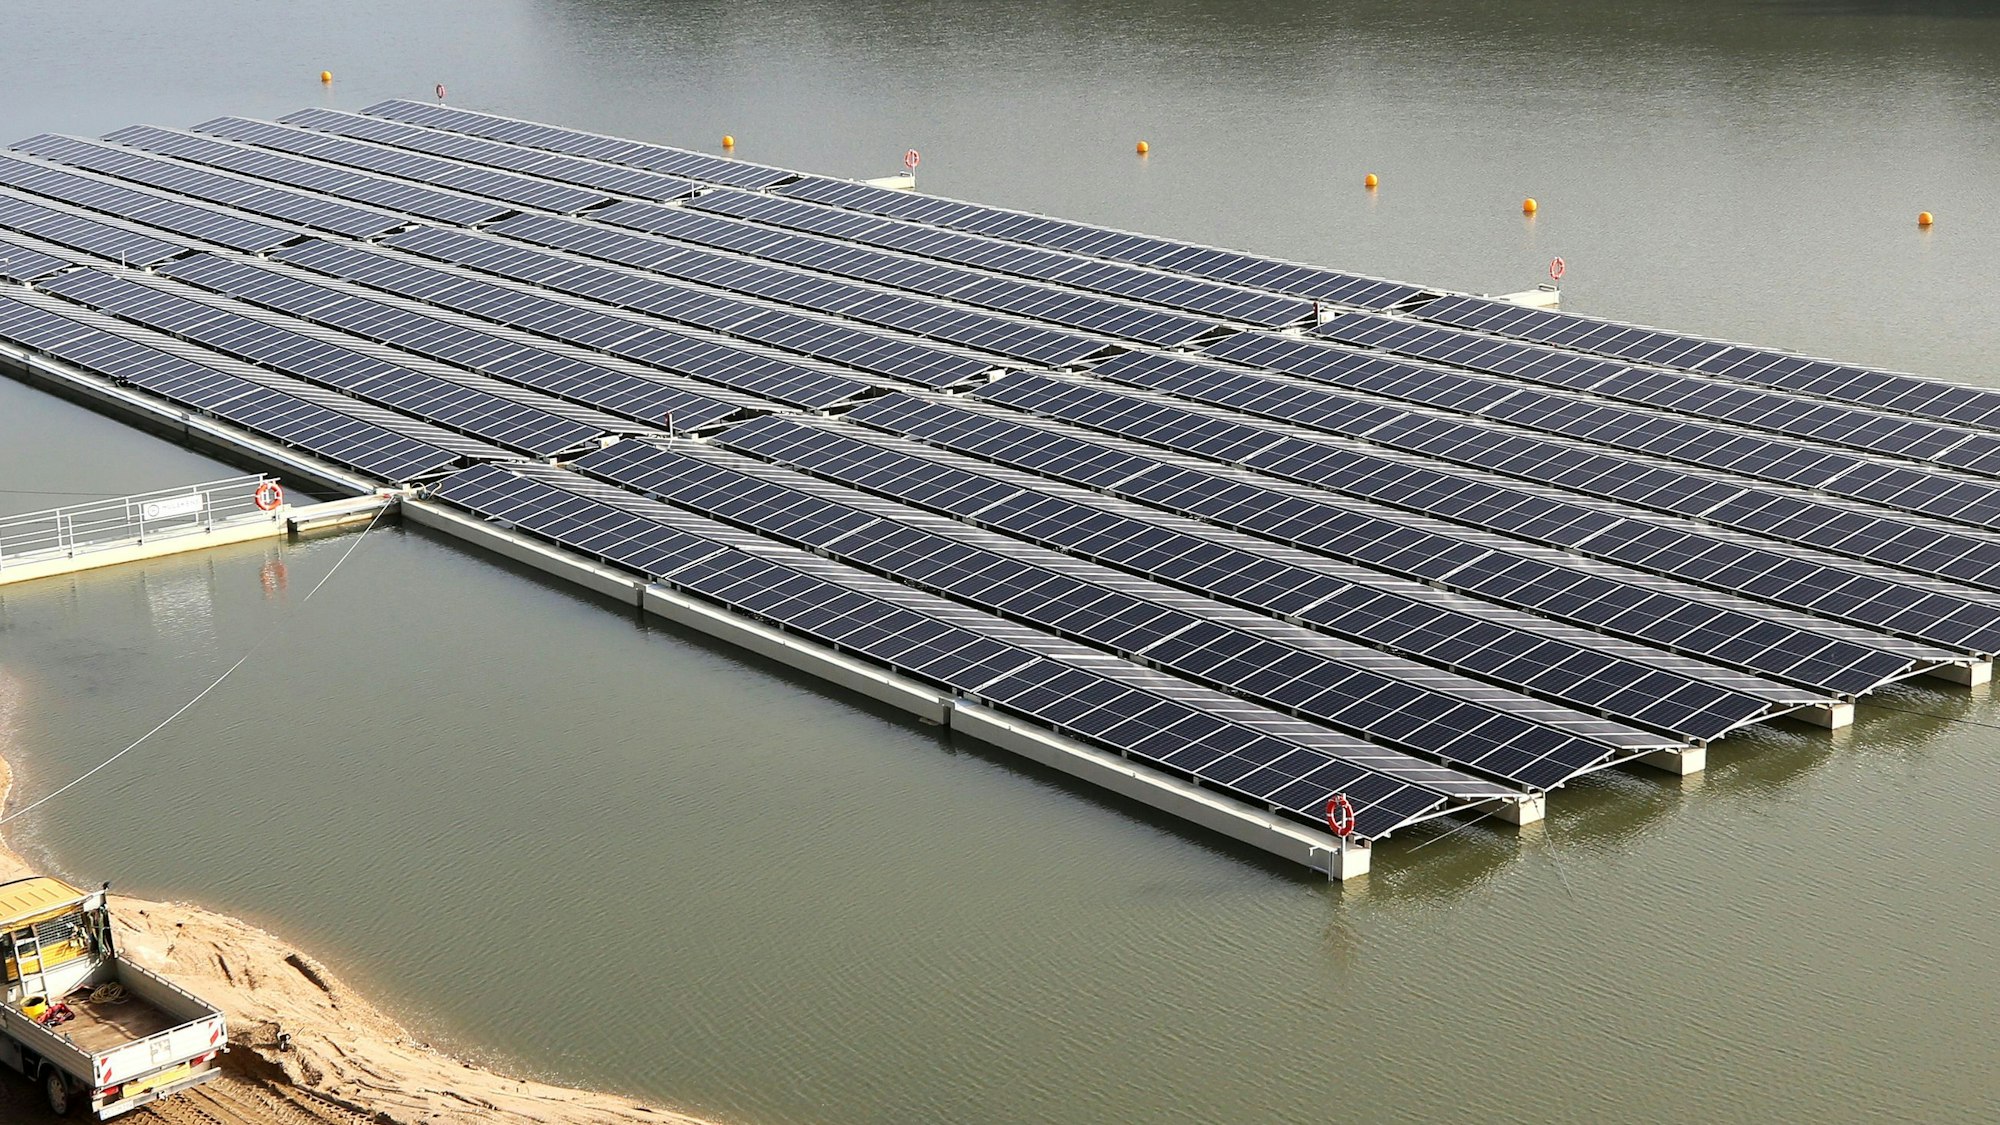 Die rund 150 Meter mal 50 Meter große Solaranlage des Kiesproduzenten Hülskens schwimmt auf einem Baggersee. Auf 90 Schwimmern sind 2000 Solarmodule montiert, die eine Spitzenleistung von 750 Kilowatt haben.